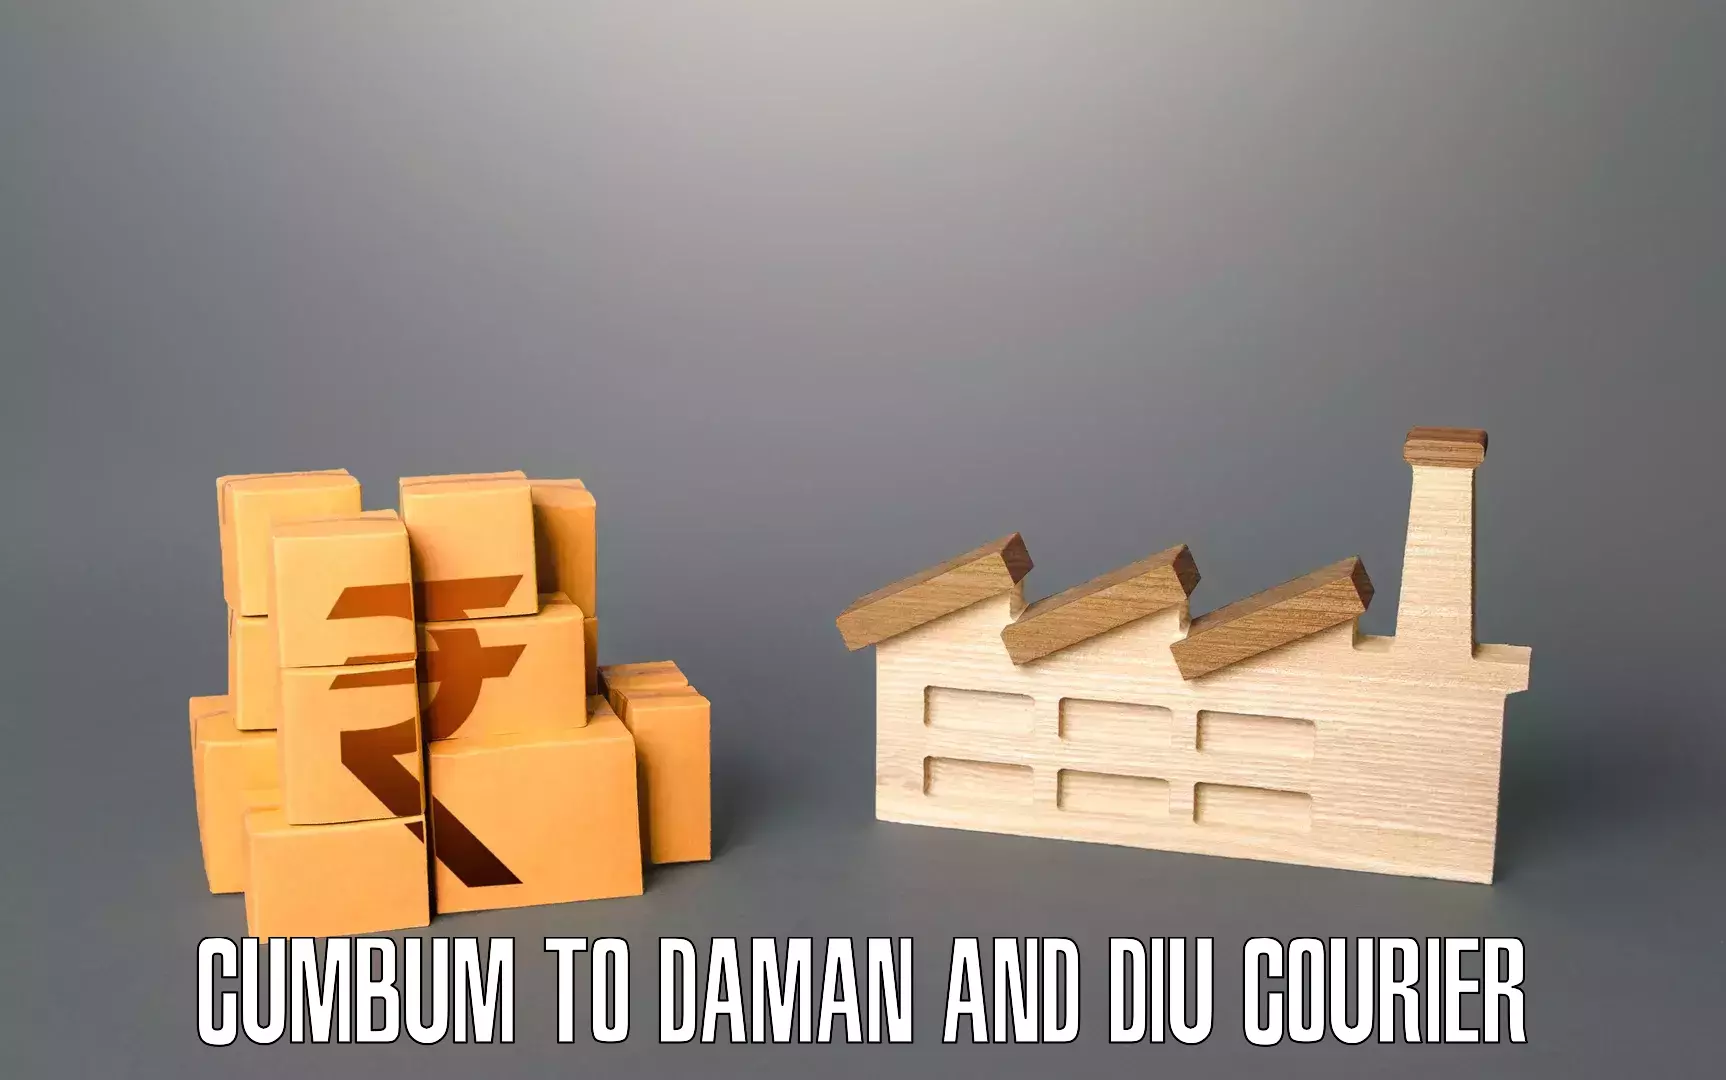 Expert furniture transport Cumbum to Diu